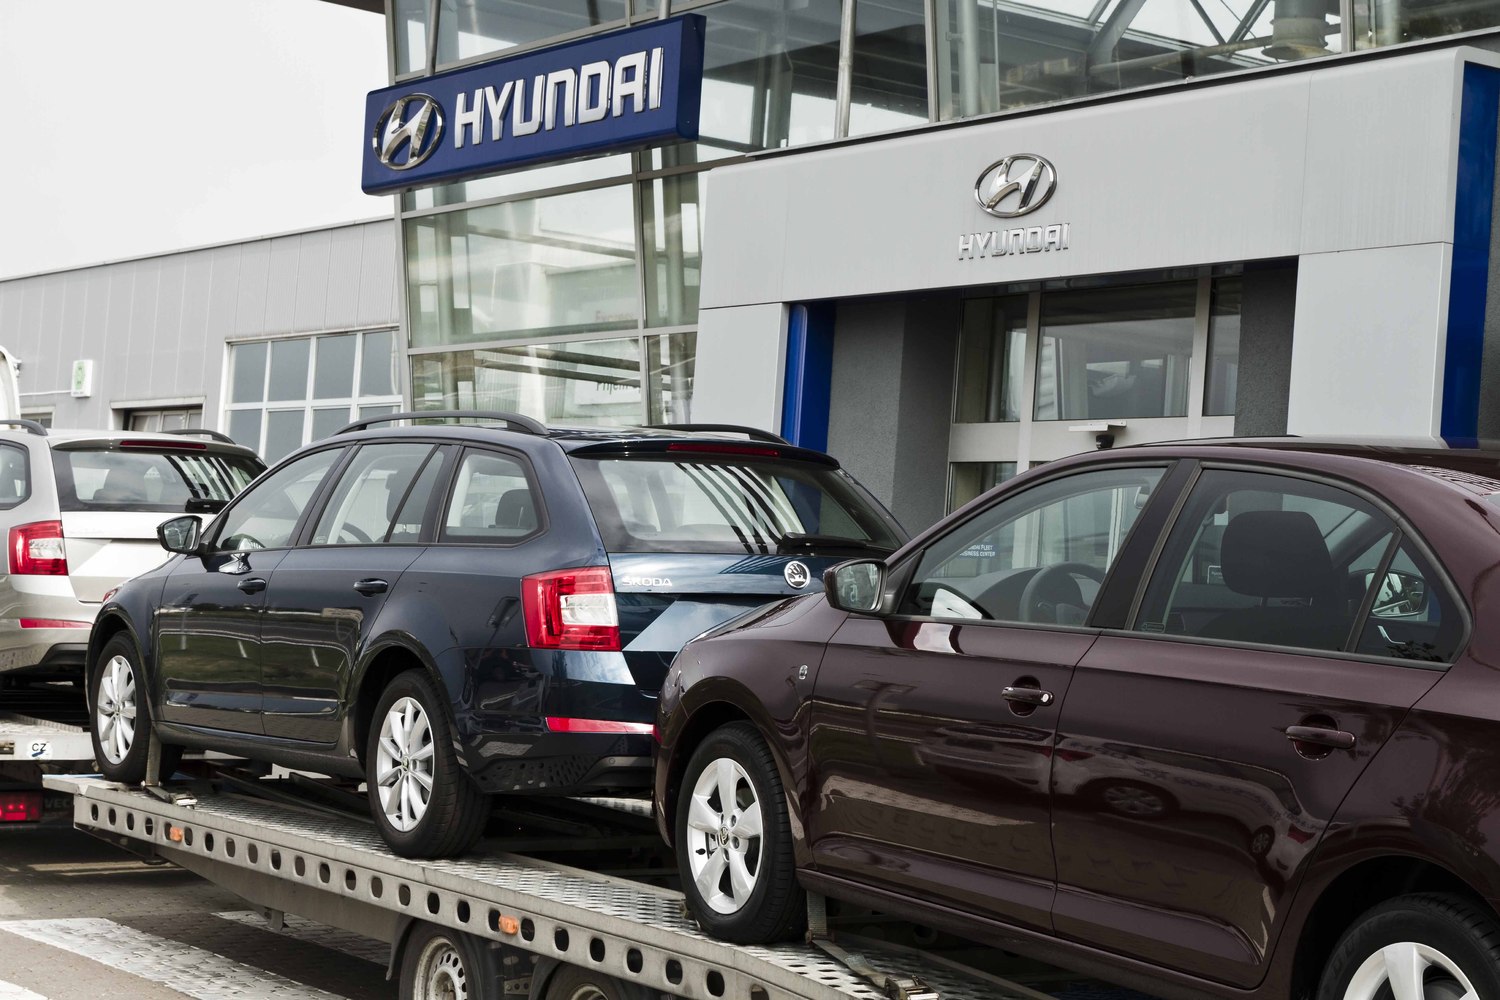 Před vybrané autosalony Hyundai míří škodovky. Zákazníci se tak mohou okamžitě přesvědčit, kdo je nejlepší.